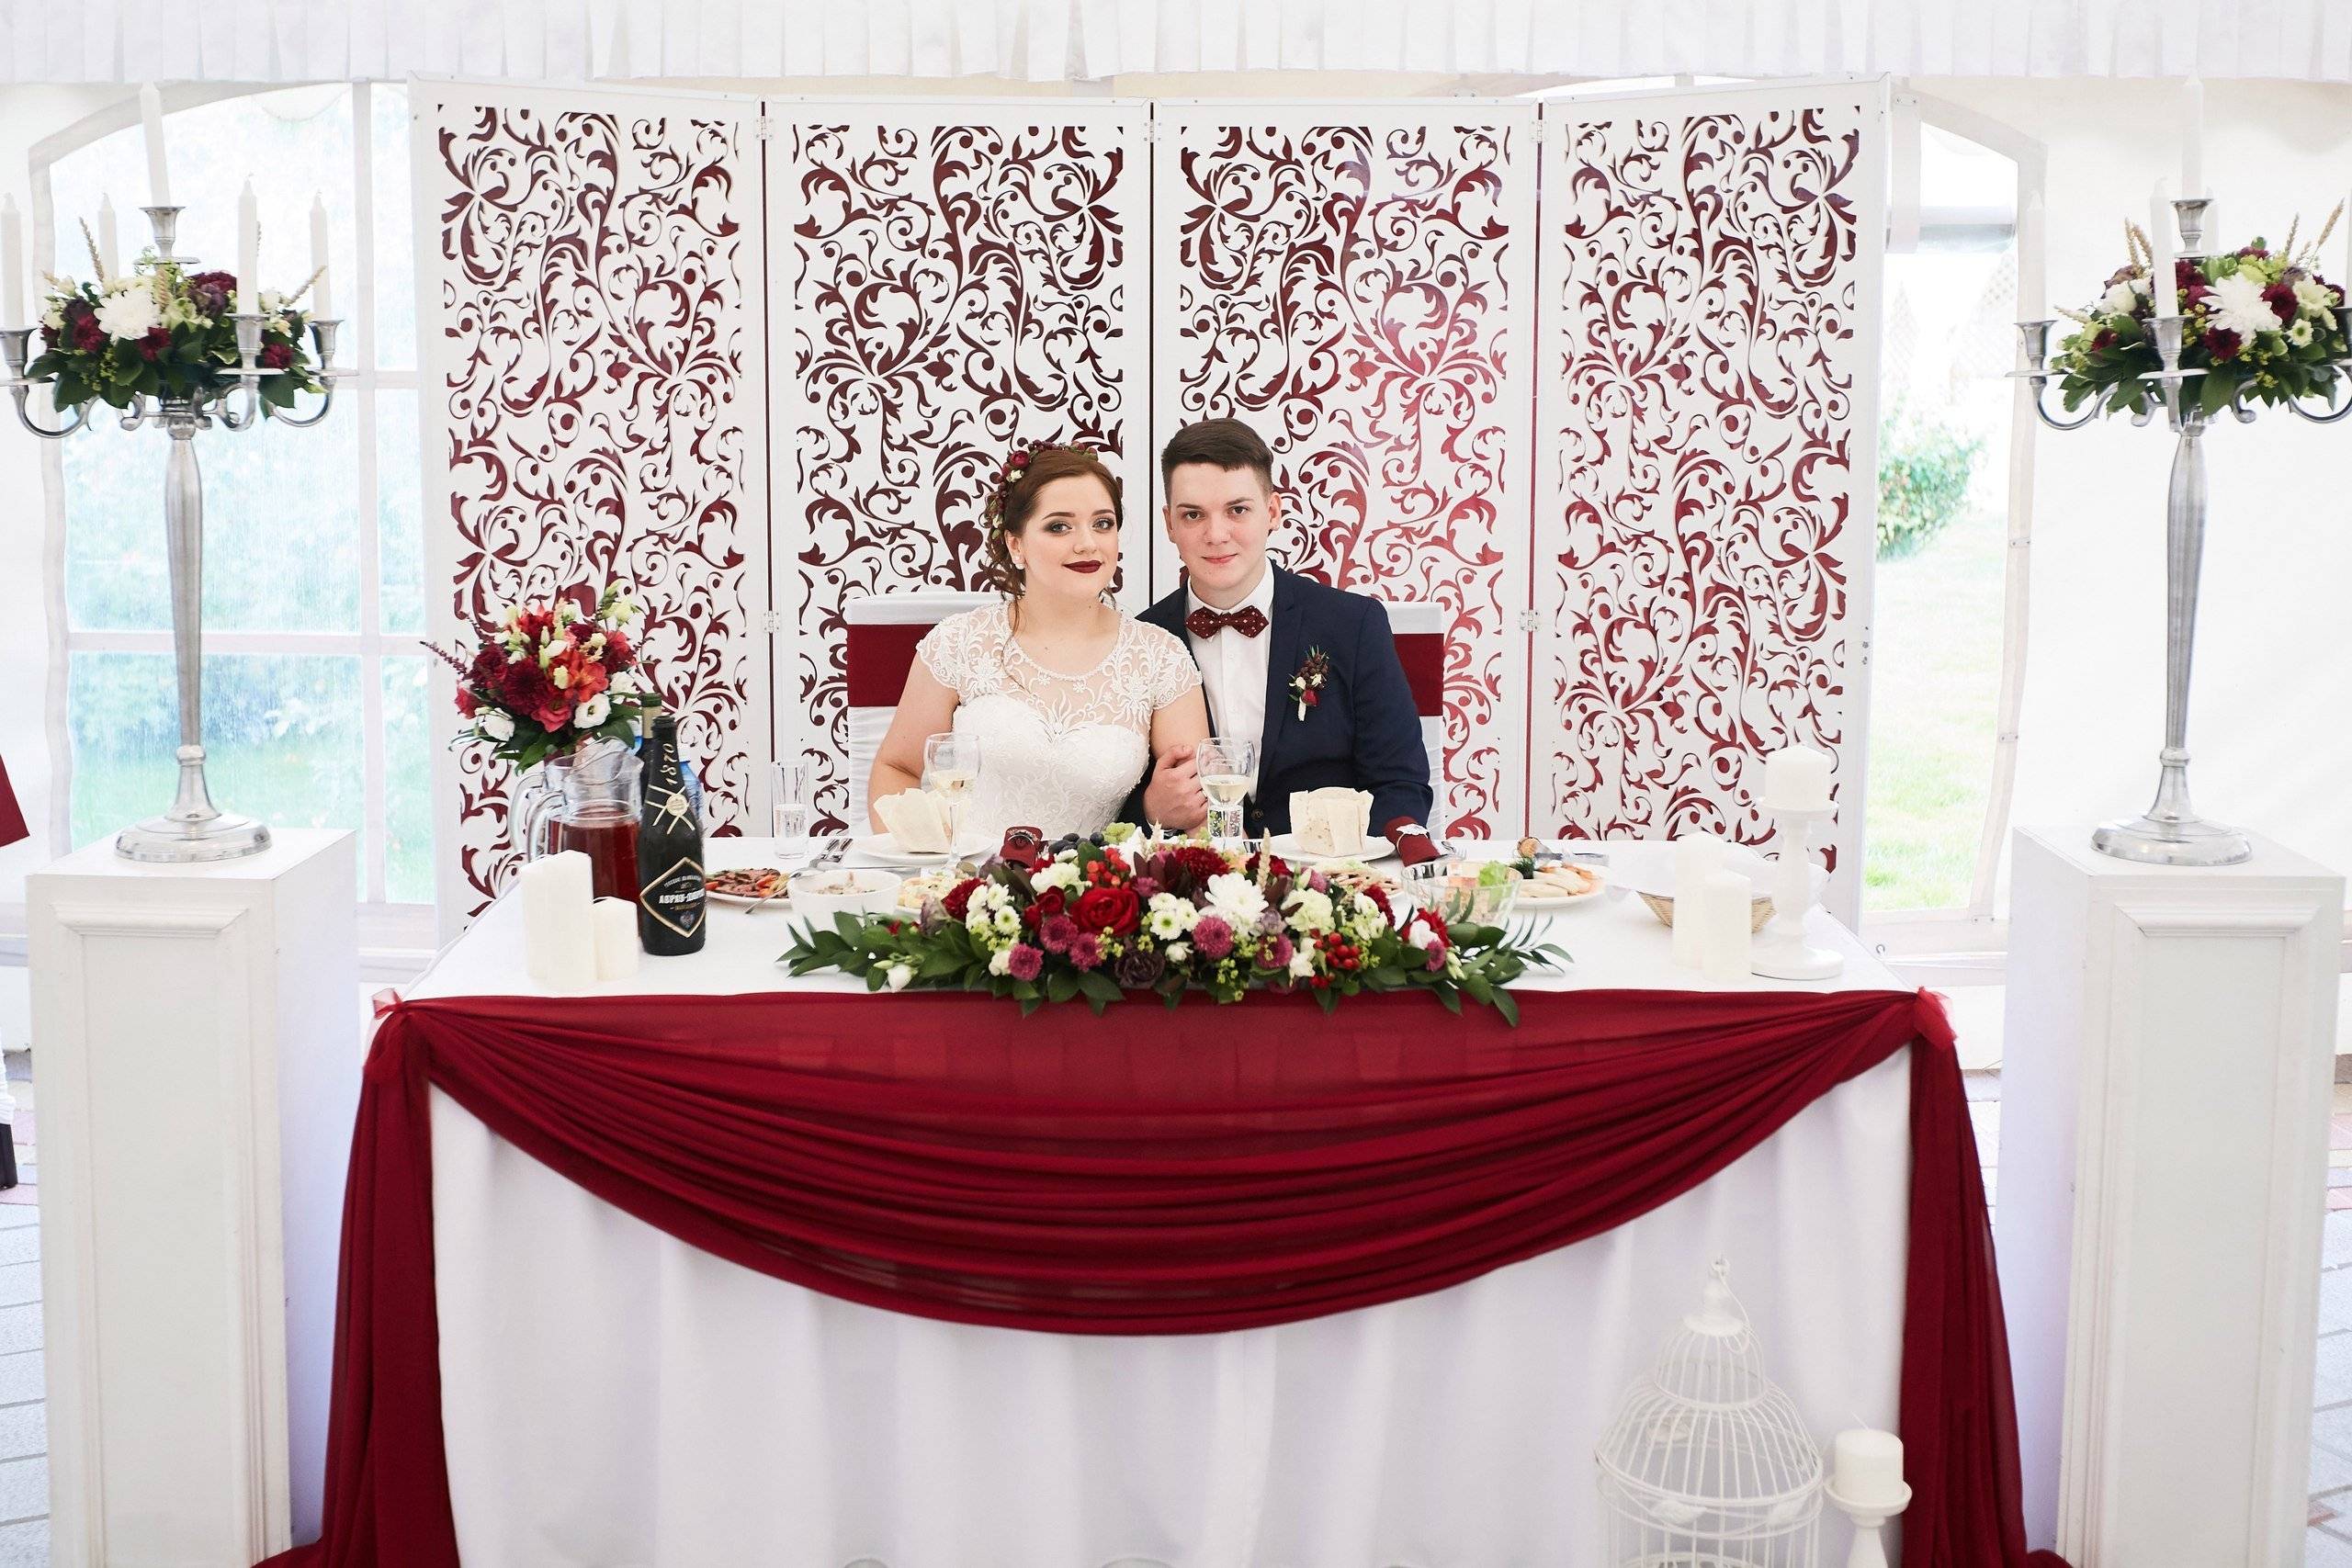 Свадьба в бордовом цвете или бордовая свадьба - идеи оформления, образ жениха и невесты, фото